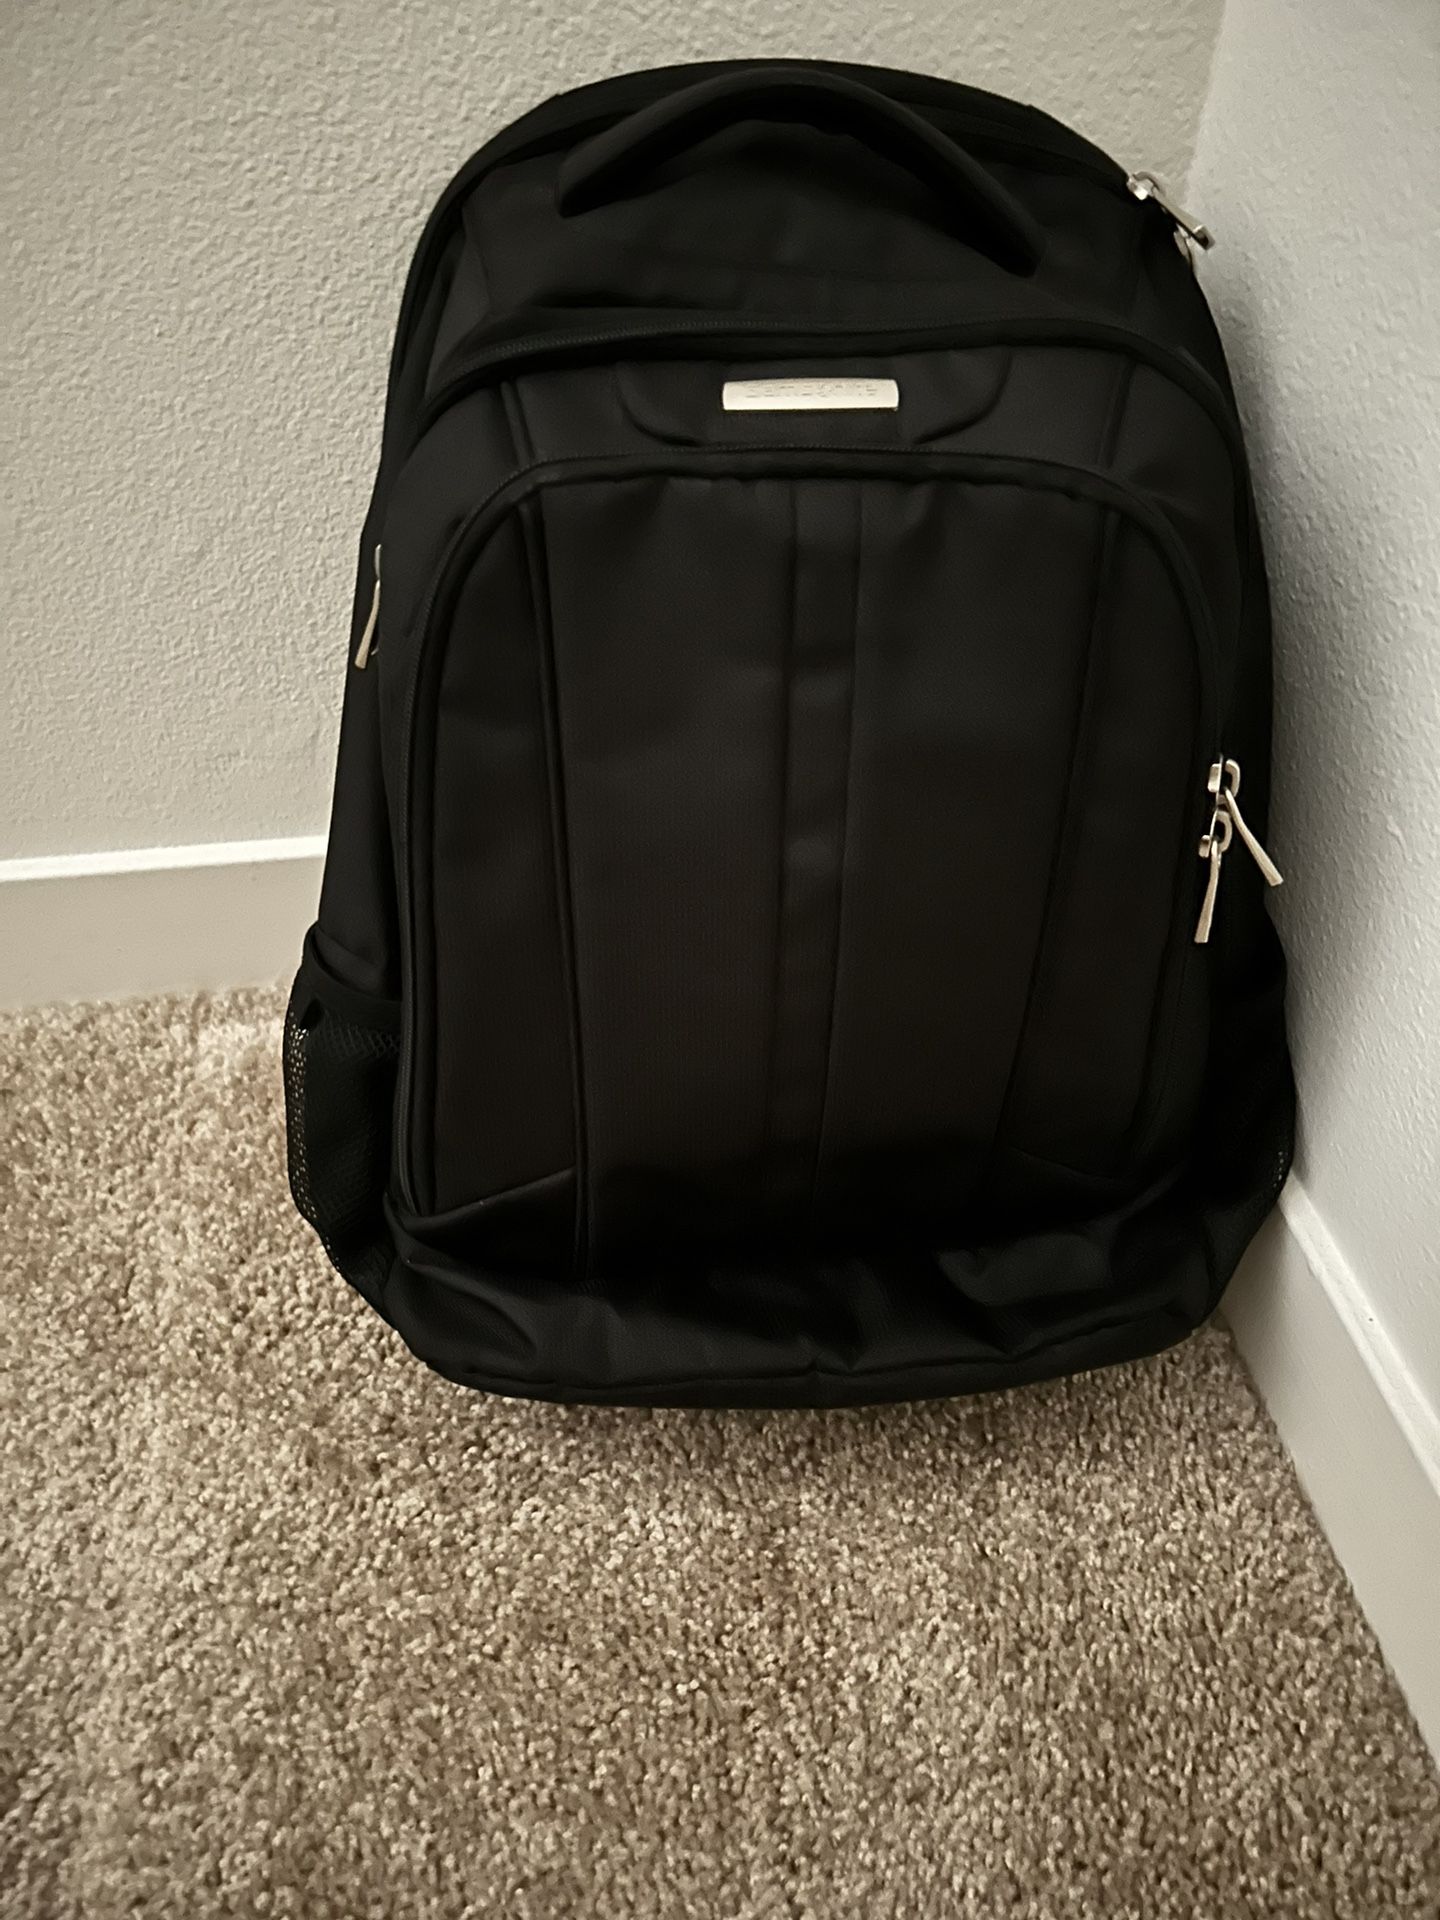 Samsonite Bag/Backpack